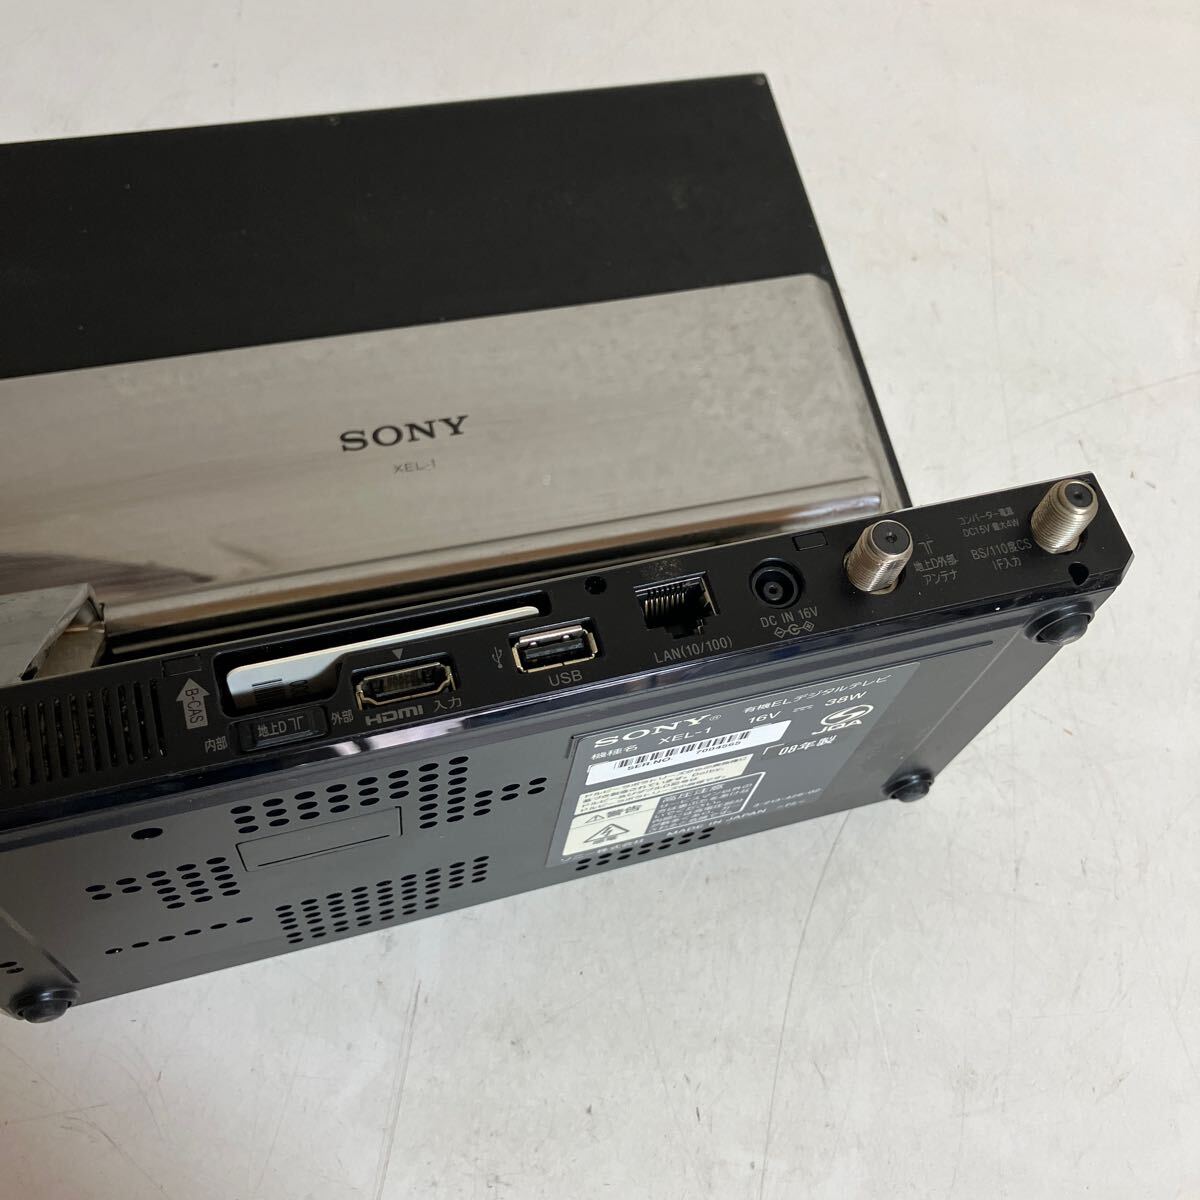 SONY Sony иметь машина EL телевизор XEL-1 08 год производства текущее состояние товар корпус только collector 